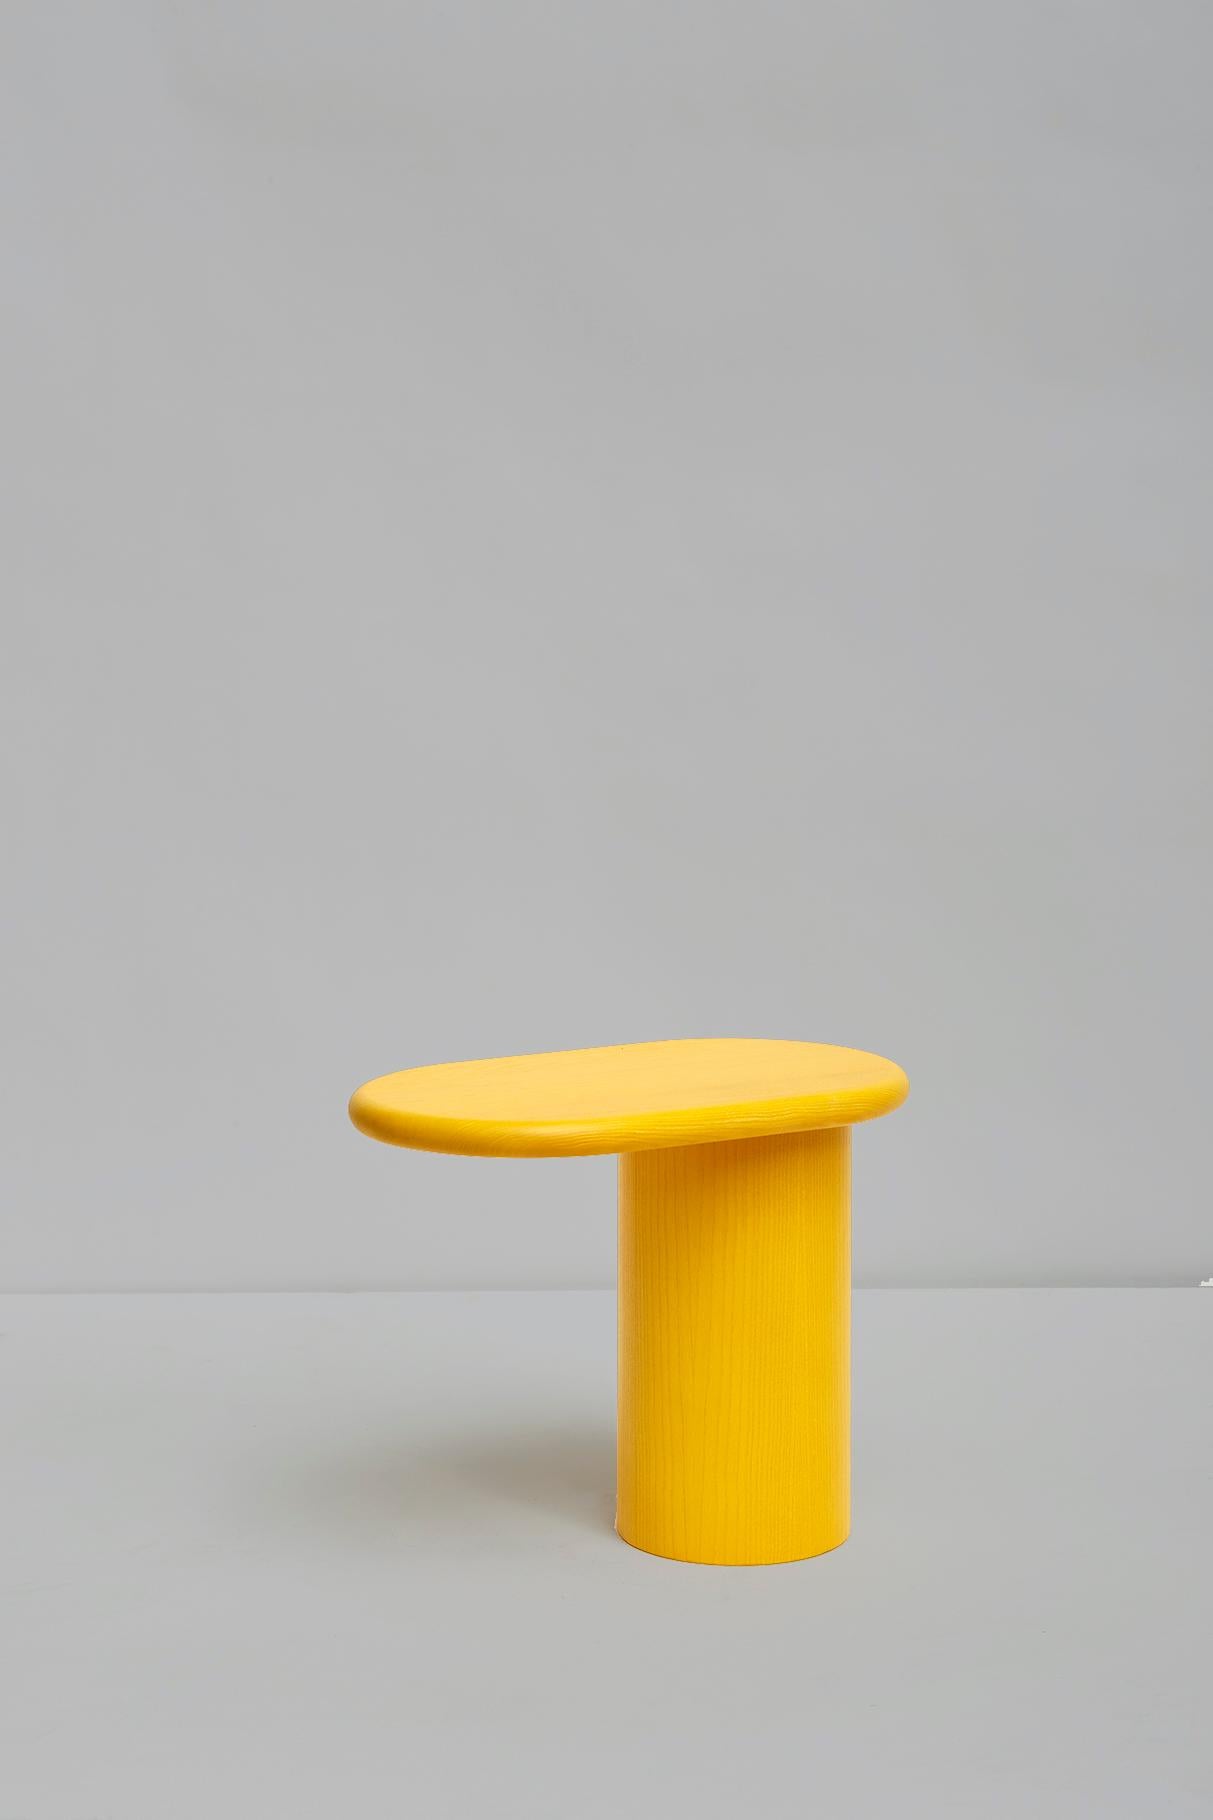 Cantilever petit, Collection Colorama.
Design de Matteo Zorzenoni, produit par Scapin Collezioni.

Le cantilever est une petite table d'appoint ou une table basse caractérisée par le déséquilibre visuel créé par le fait que son plateau en